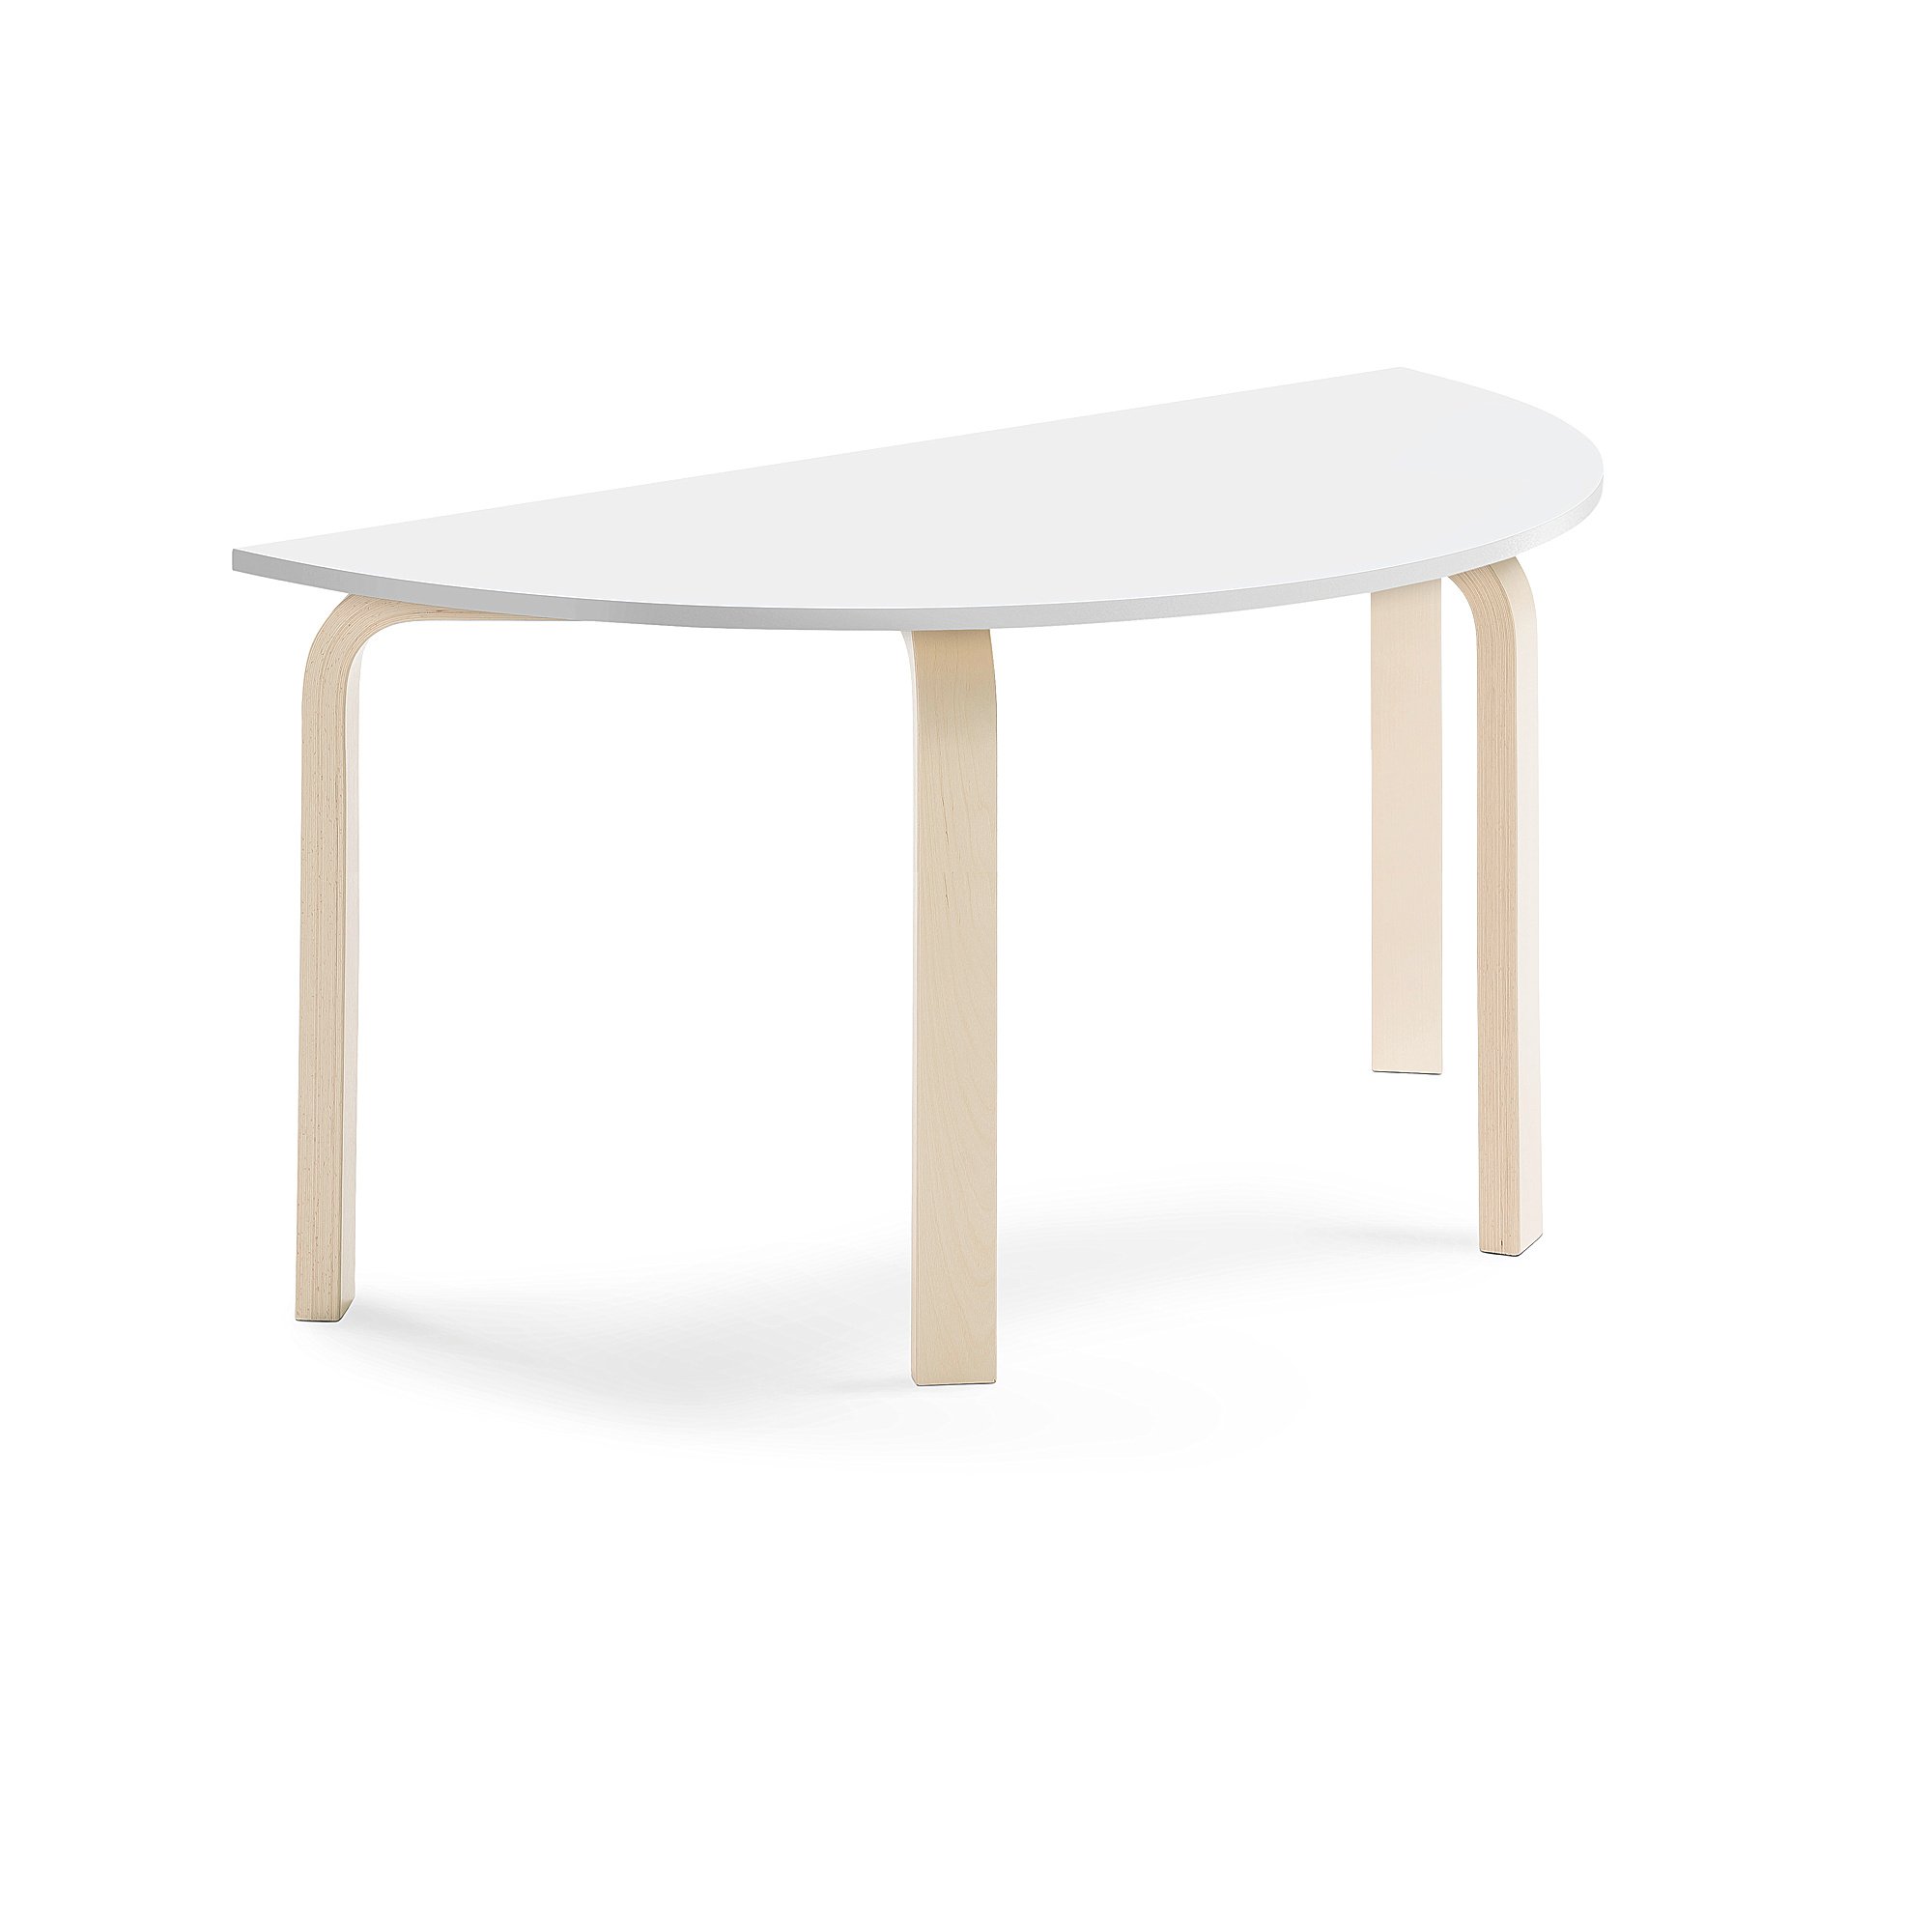 Stůl ELTON, půlkruh, 1200x600x590 mm, bříza, akustická HPL deska, bílá